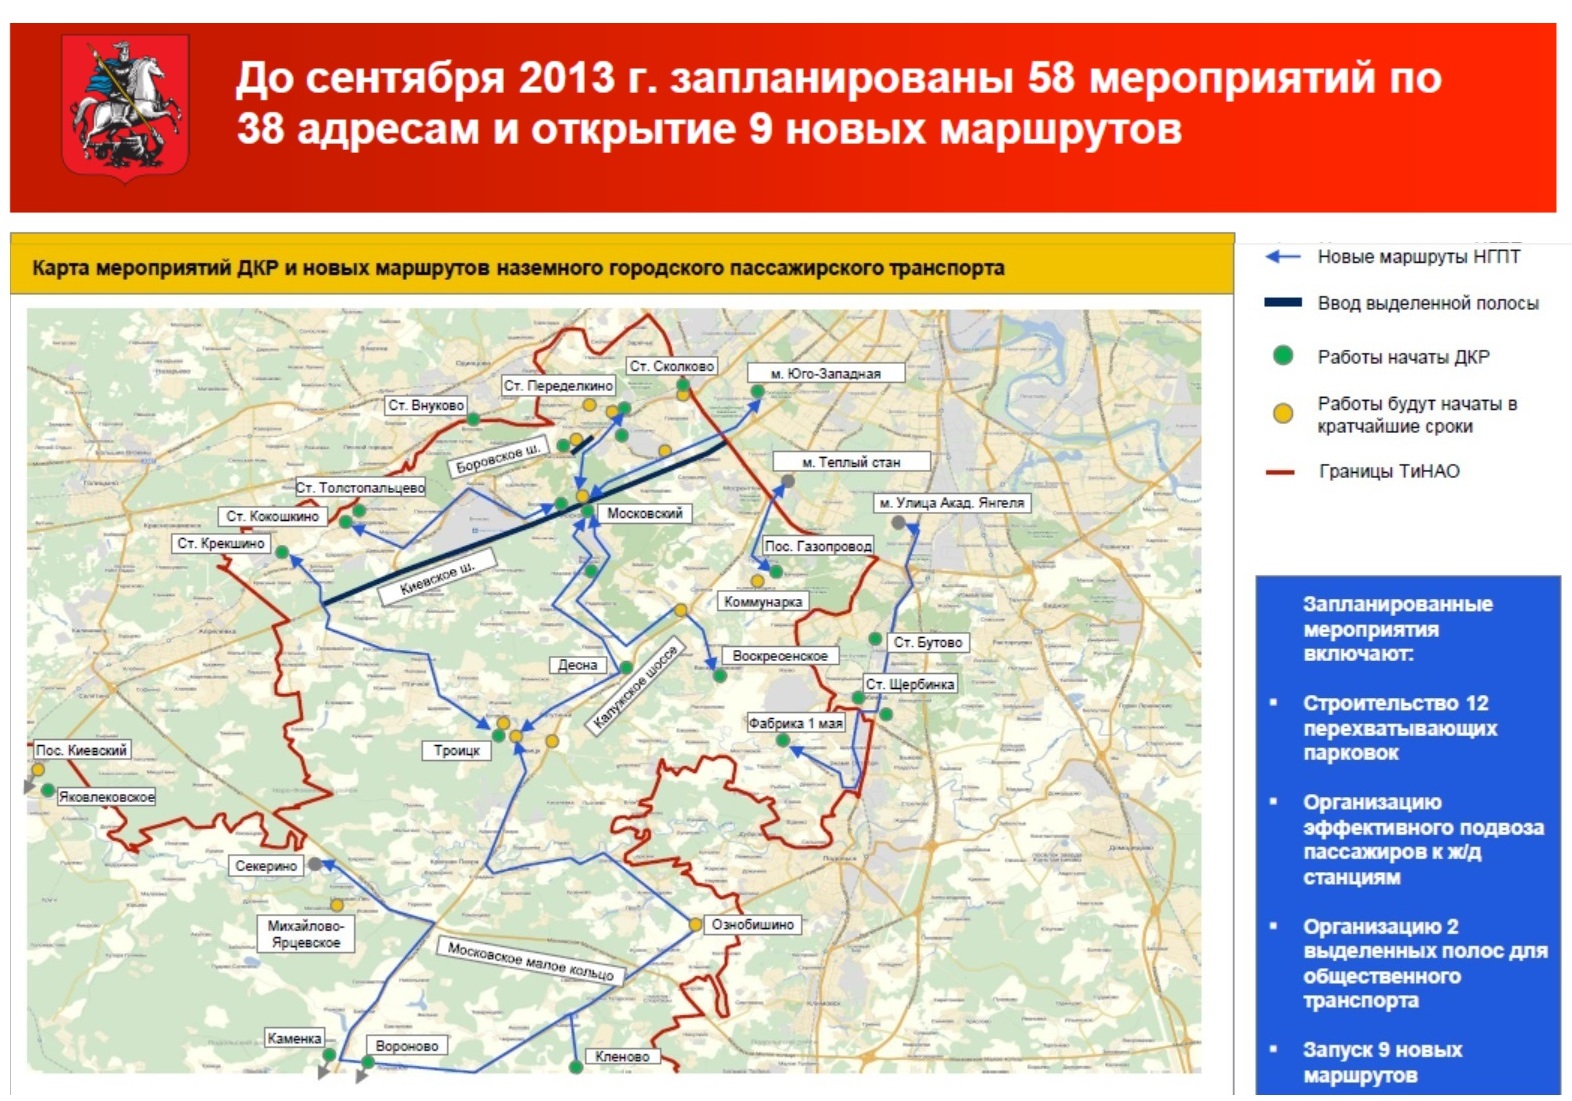 О организации маршрутов НГПТ и развитию транспортной инфраструктуры ТиНАО